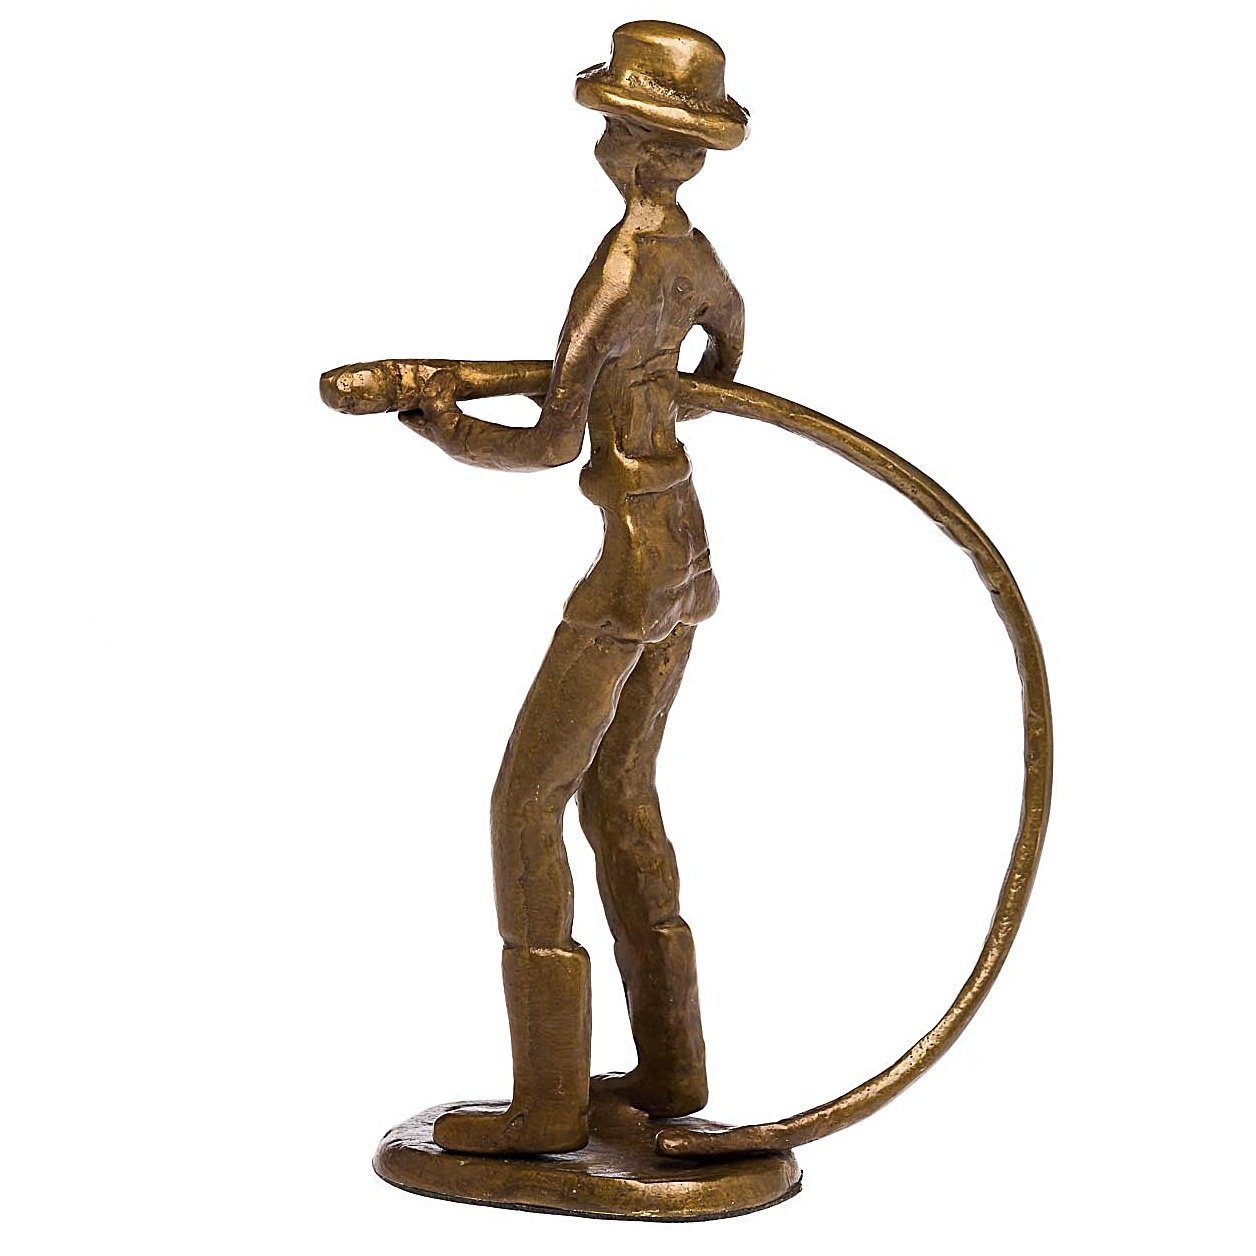 Feuerwehrmann Skulptur Bronze Antik-Stil Kunst Moderne Figur Aubaho Skulptur Feuerwehr